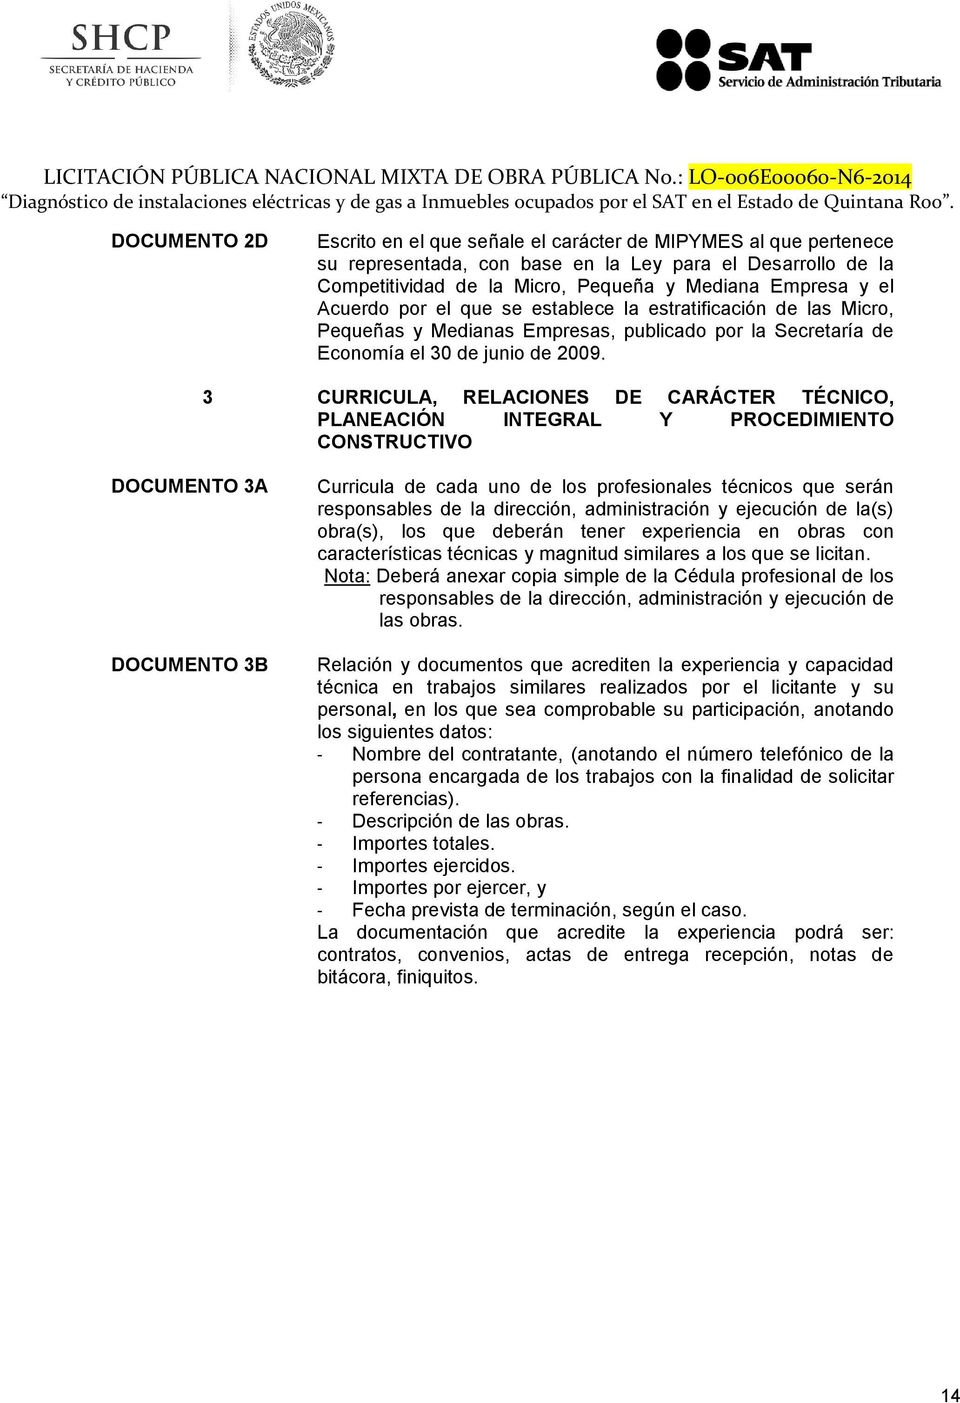 Acuerdo por el que se establece la estratificación de las Micro, Pequeñas y Medianas Empresas, publicado por la Secretaría de Economía el 30 de junio de 2009.